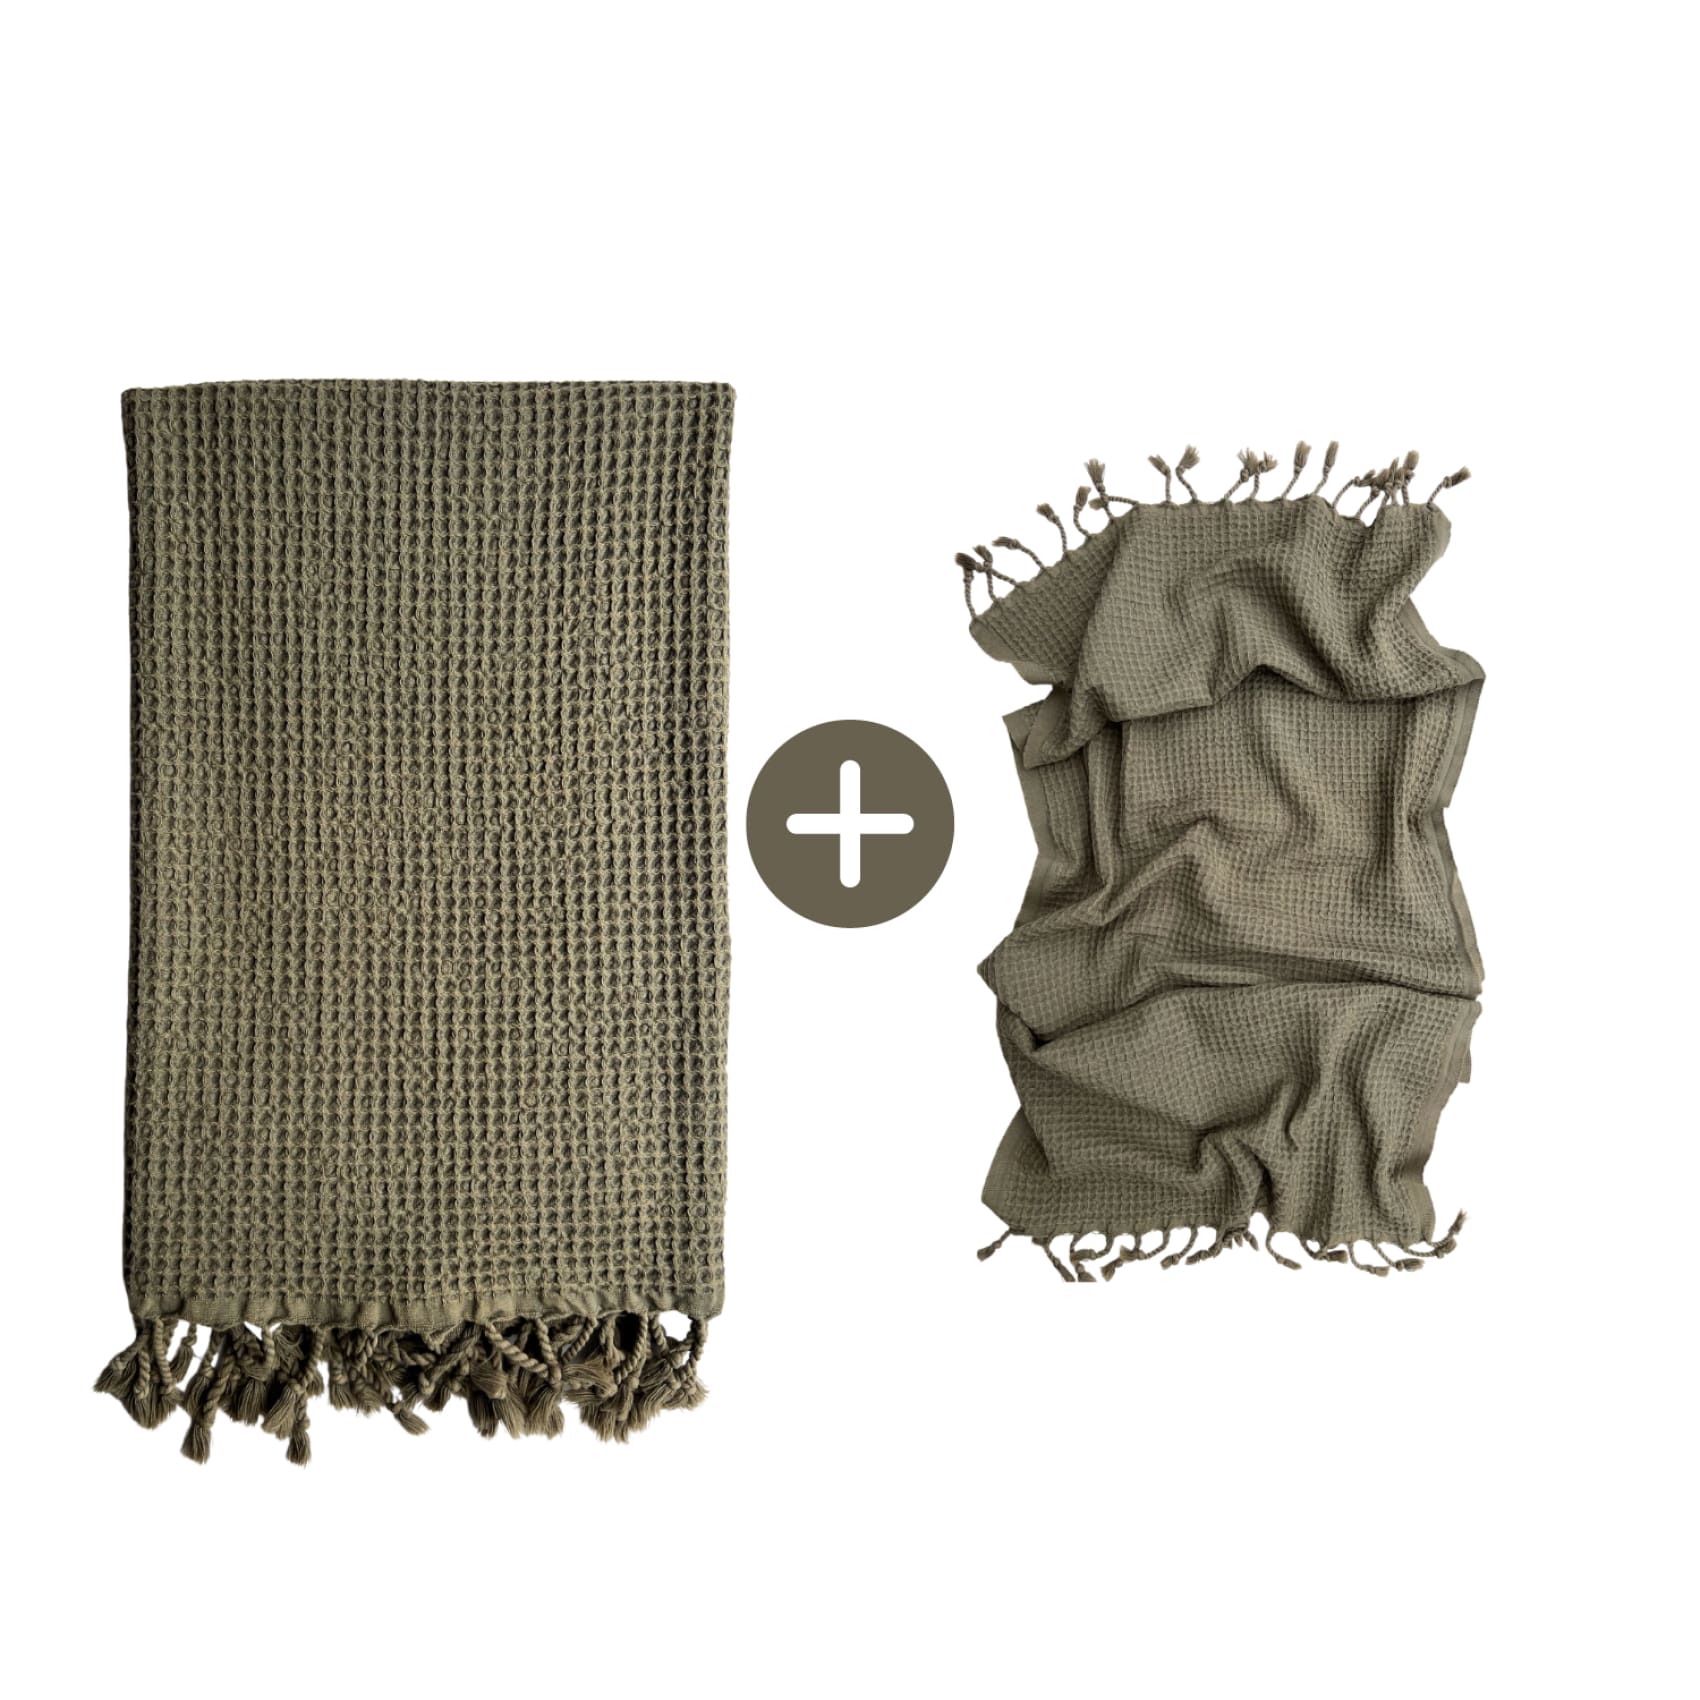 rulo-bath-set-cotton-peshtemal-handhair-towel-save-10-olive-luks-linen-ceferer-decl-boron-640.jpg